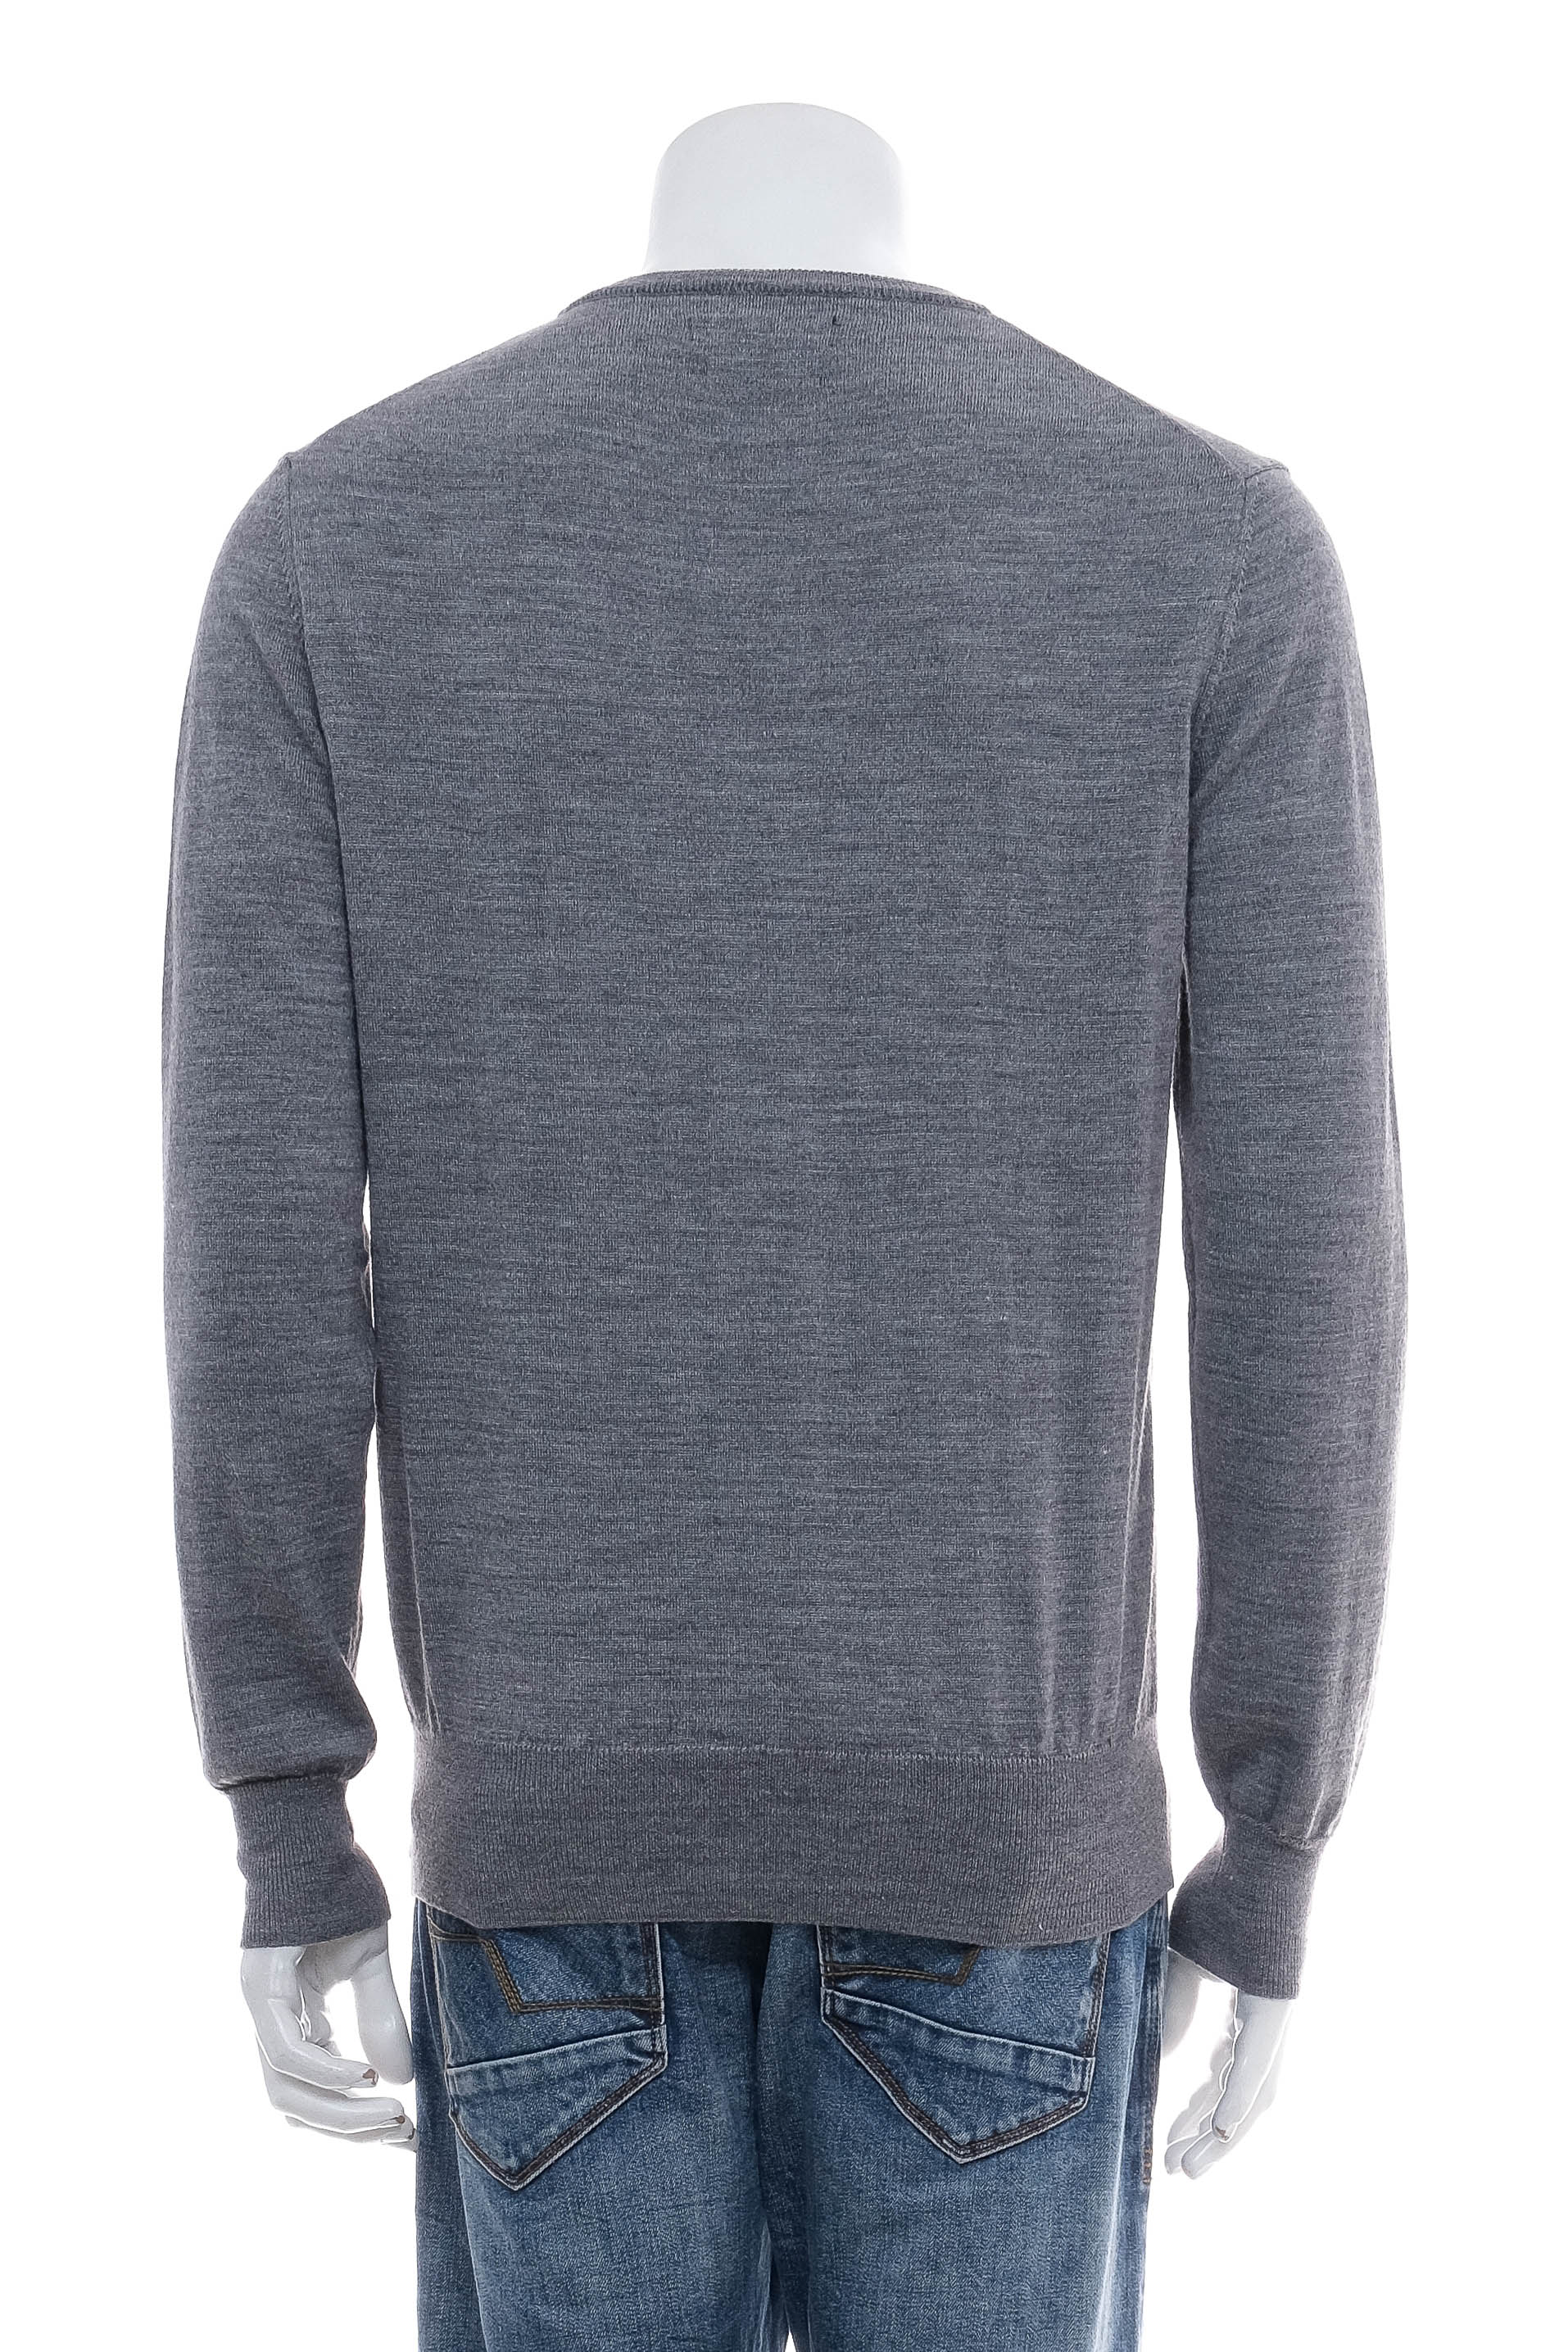 Men's sweater - REPLAY - 1